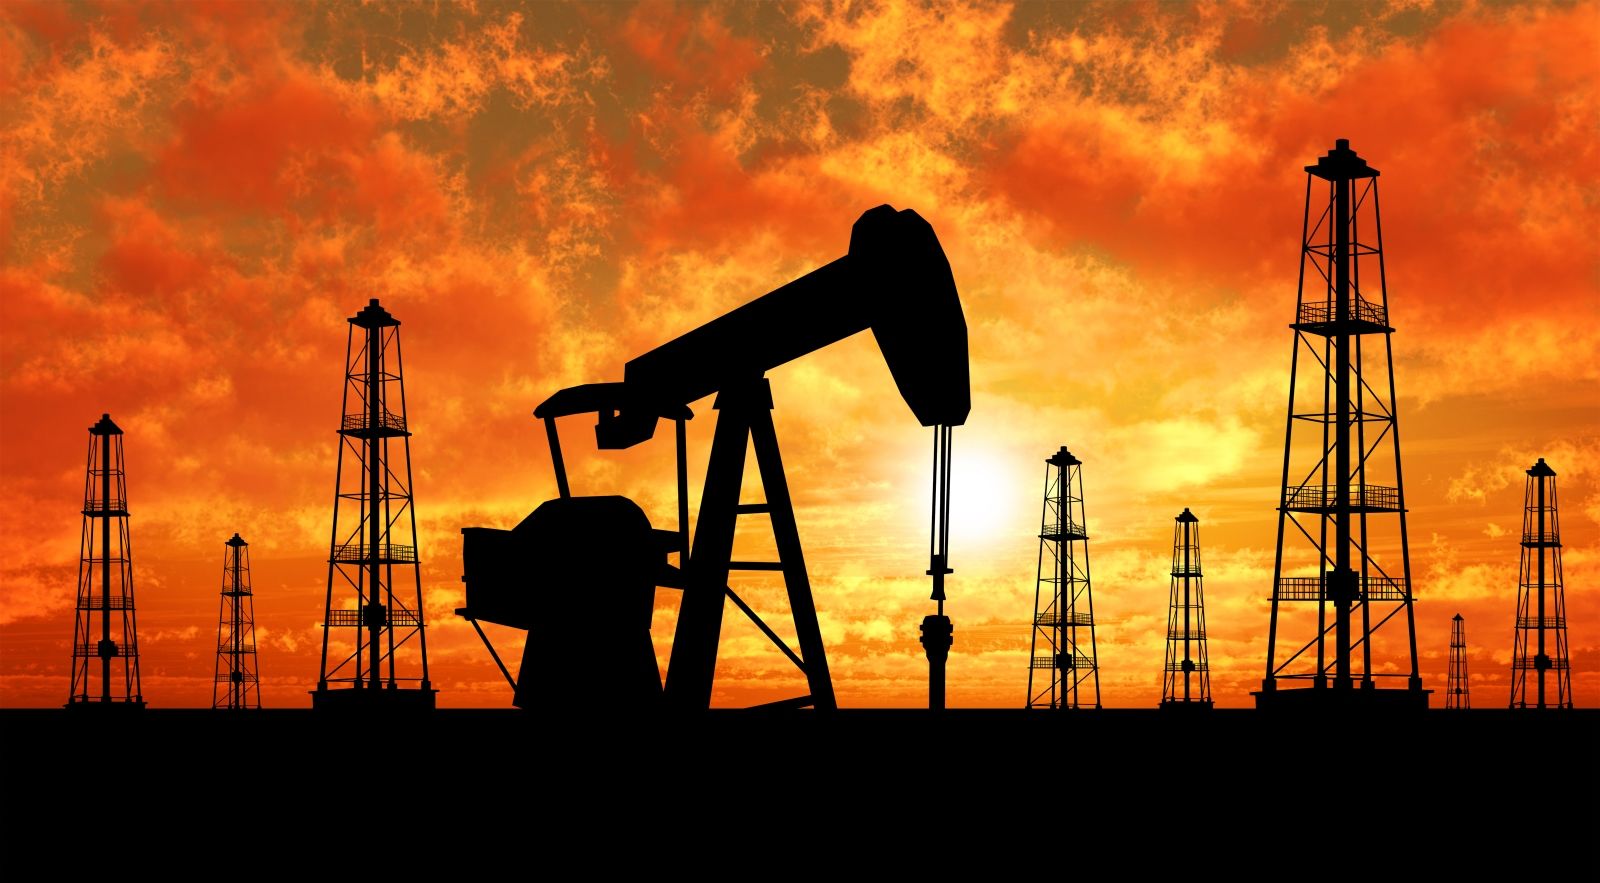 РФ засекретила объемы нефтяного экспорта, однако Bloomberg узнал неприятные для Москвы цифры